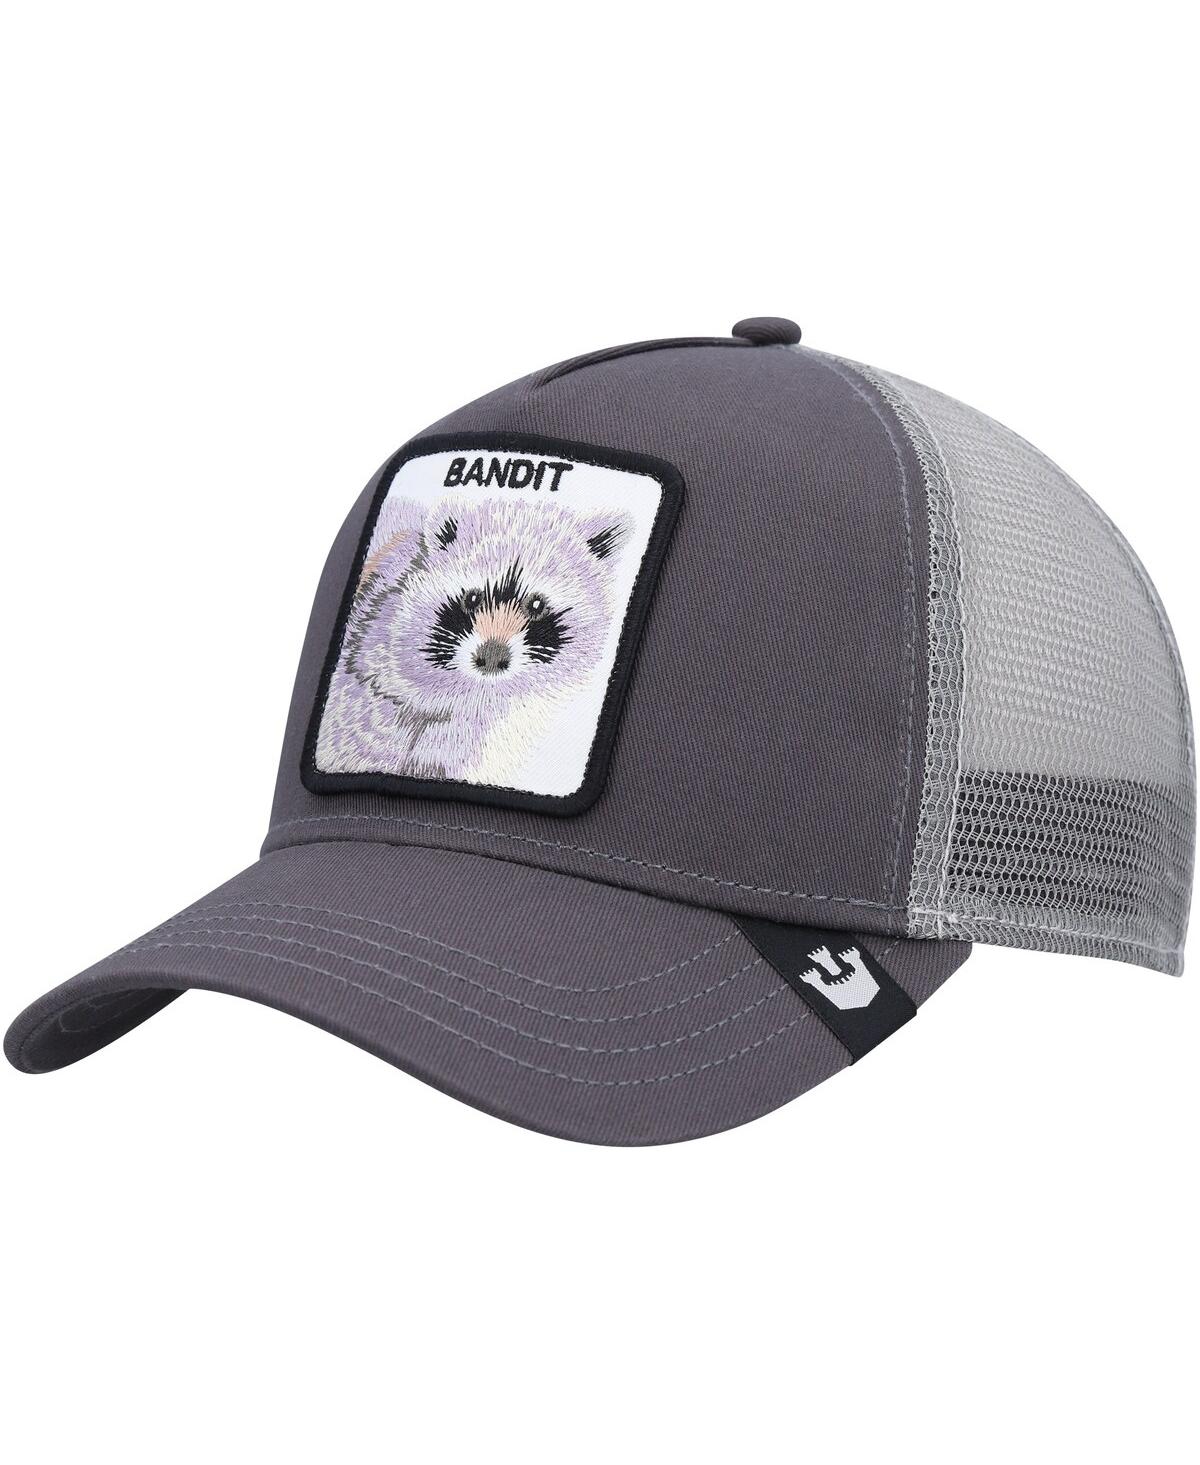 Goorin Bros Men's . Gray The Bandit Trucker Adjustable Hat